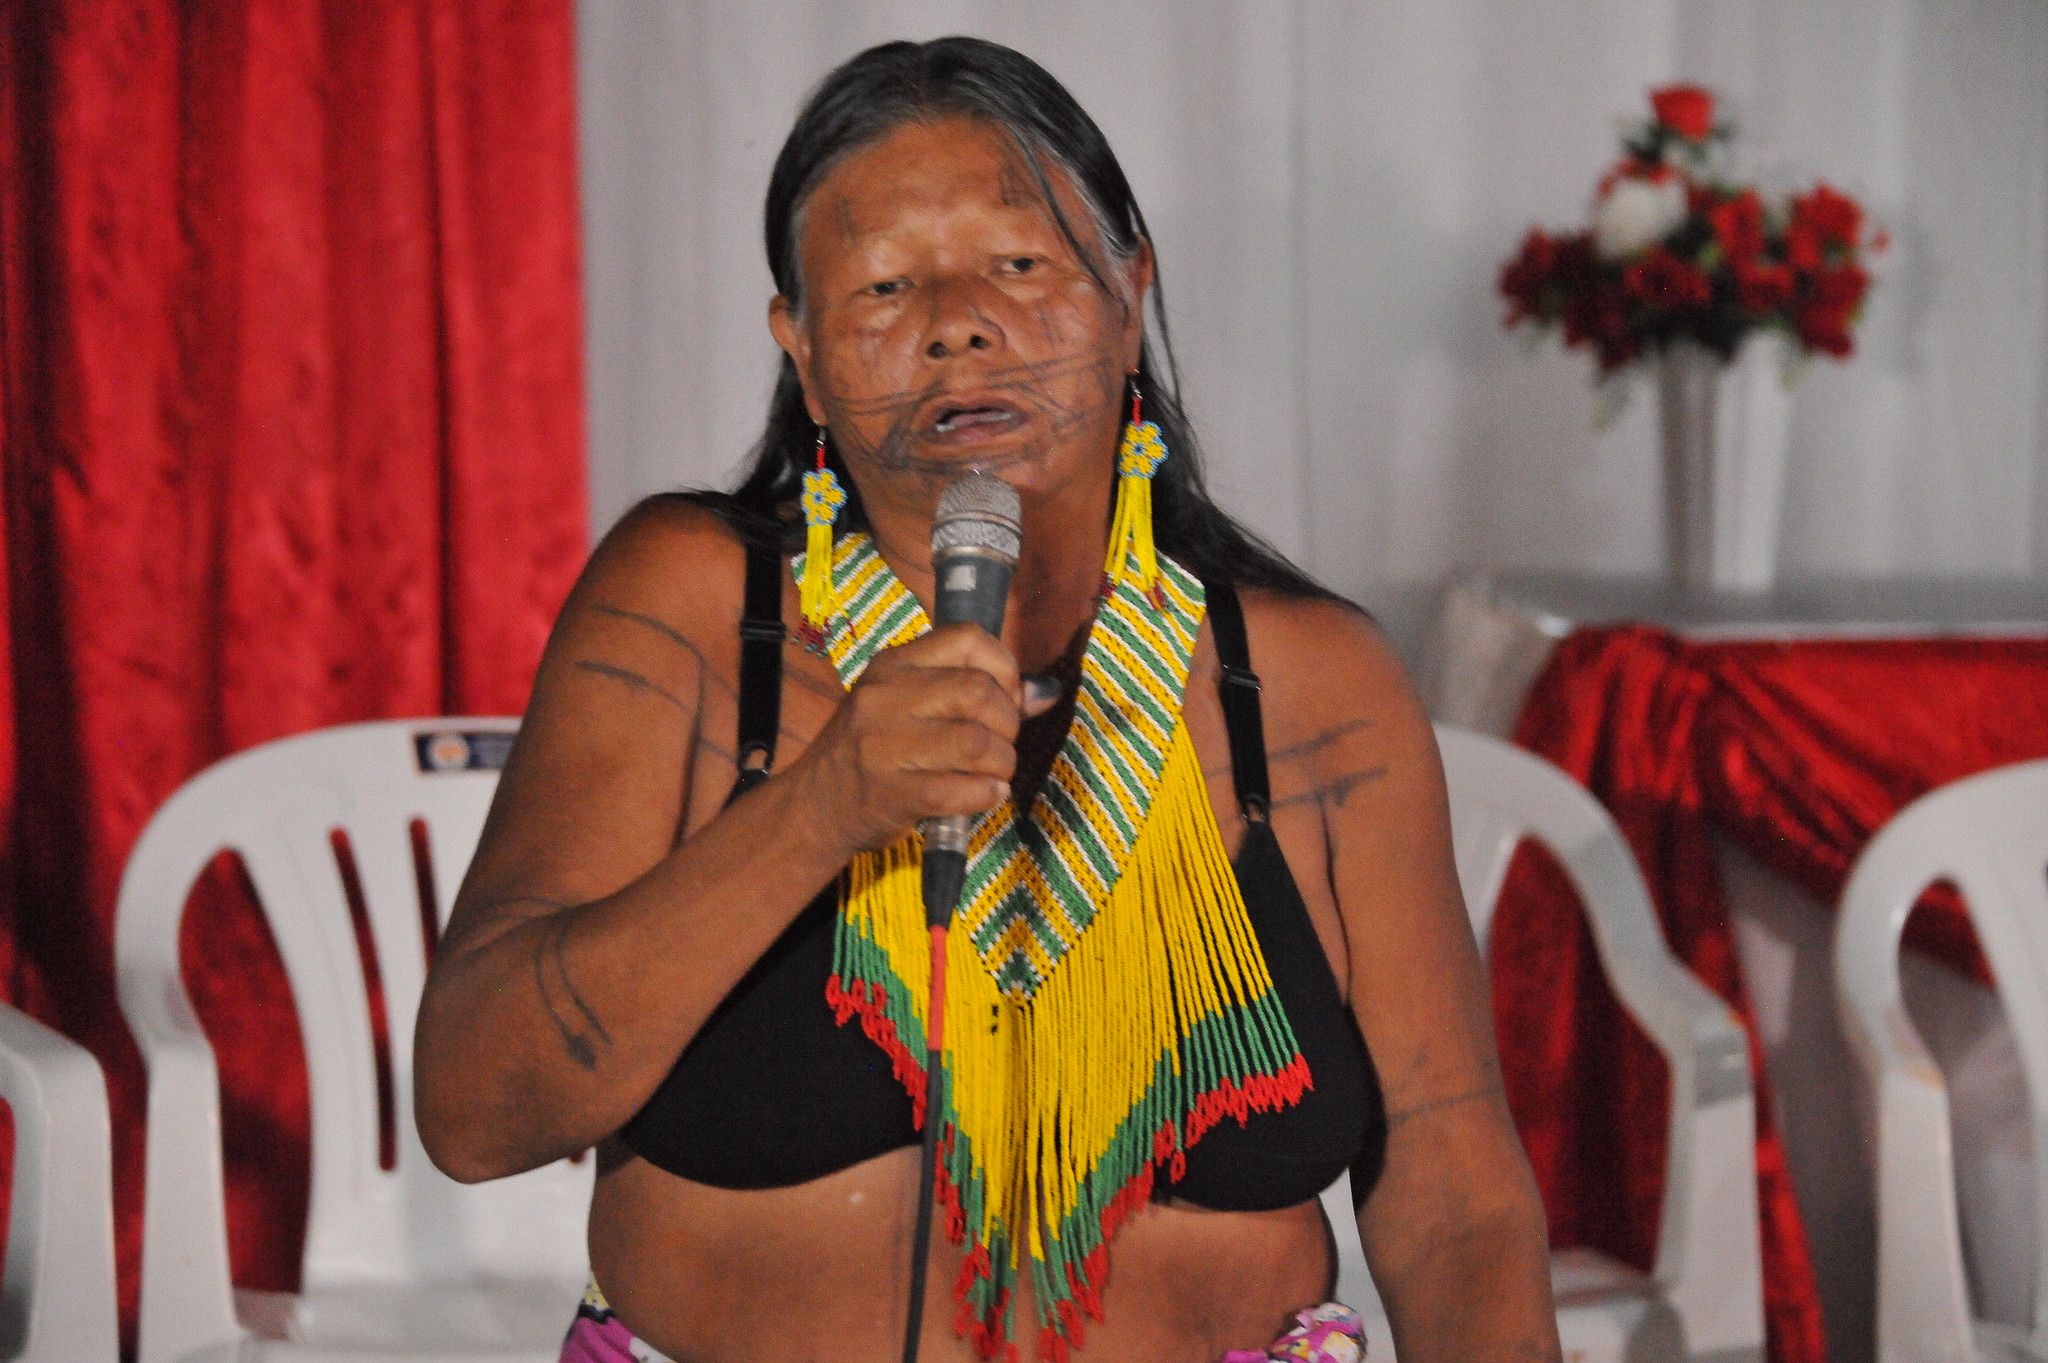 Mulher indígena idosa, de sutiã preto e colar amarelo, laranja e verde,segura microfone em salão decorado de branco e vermelho